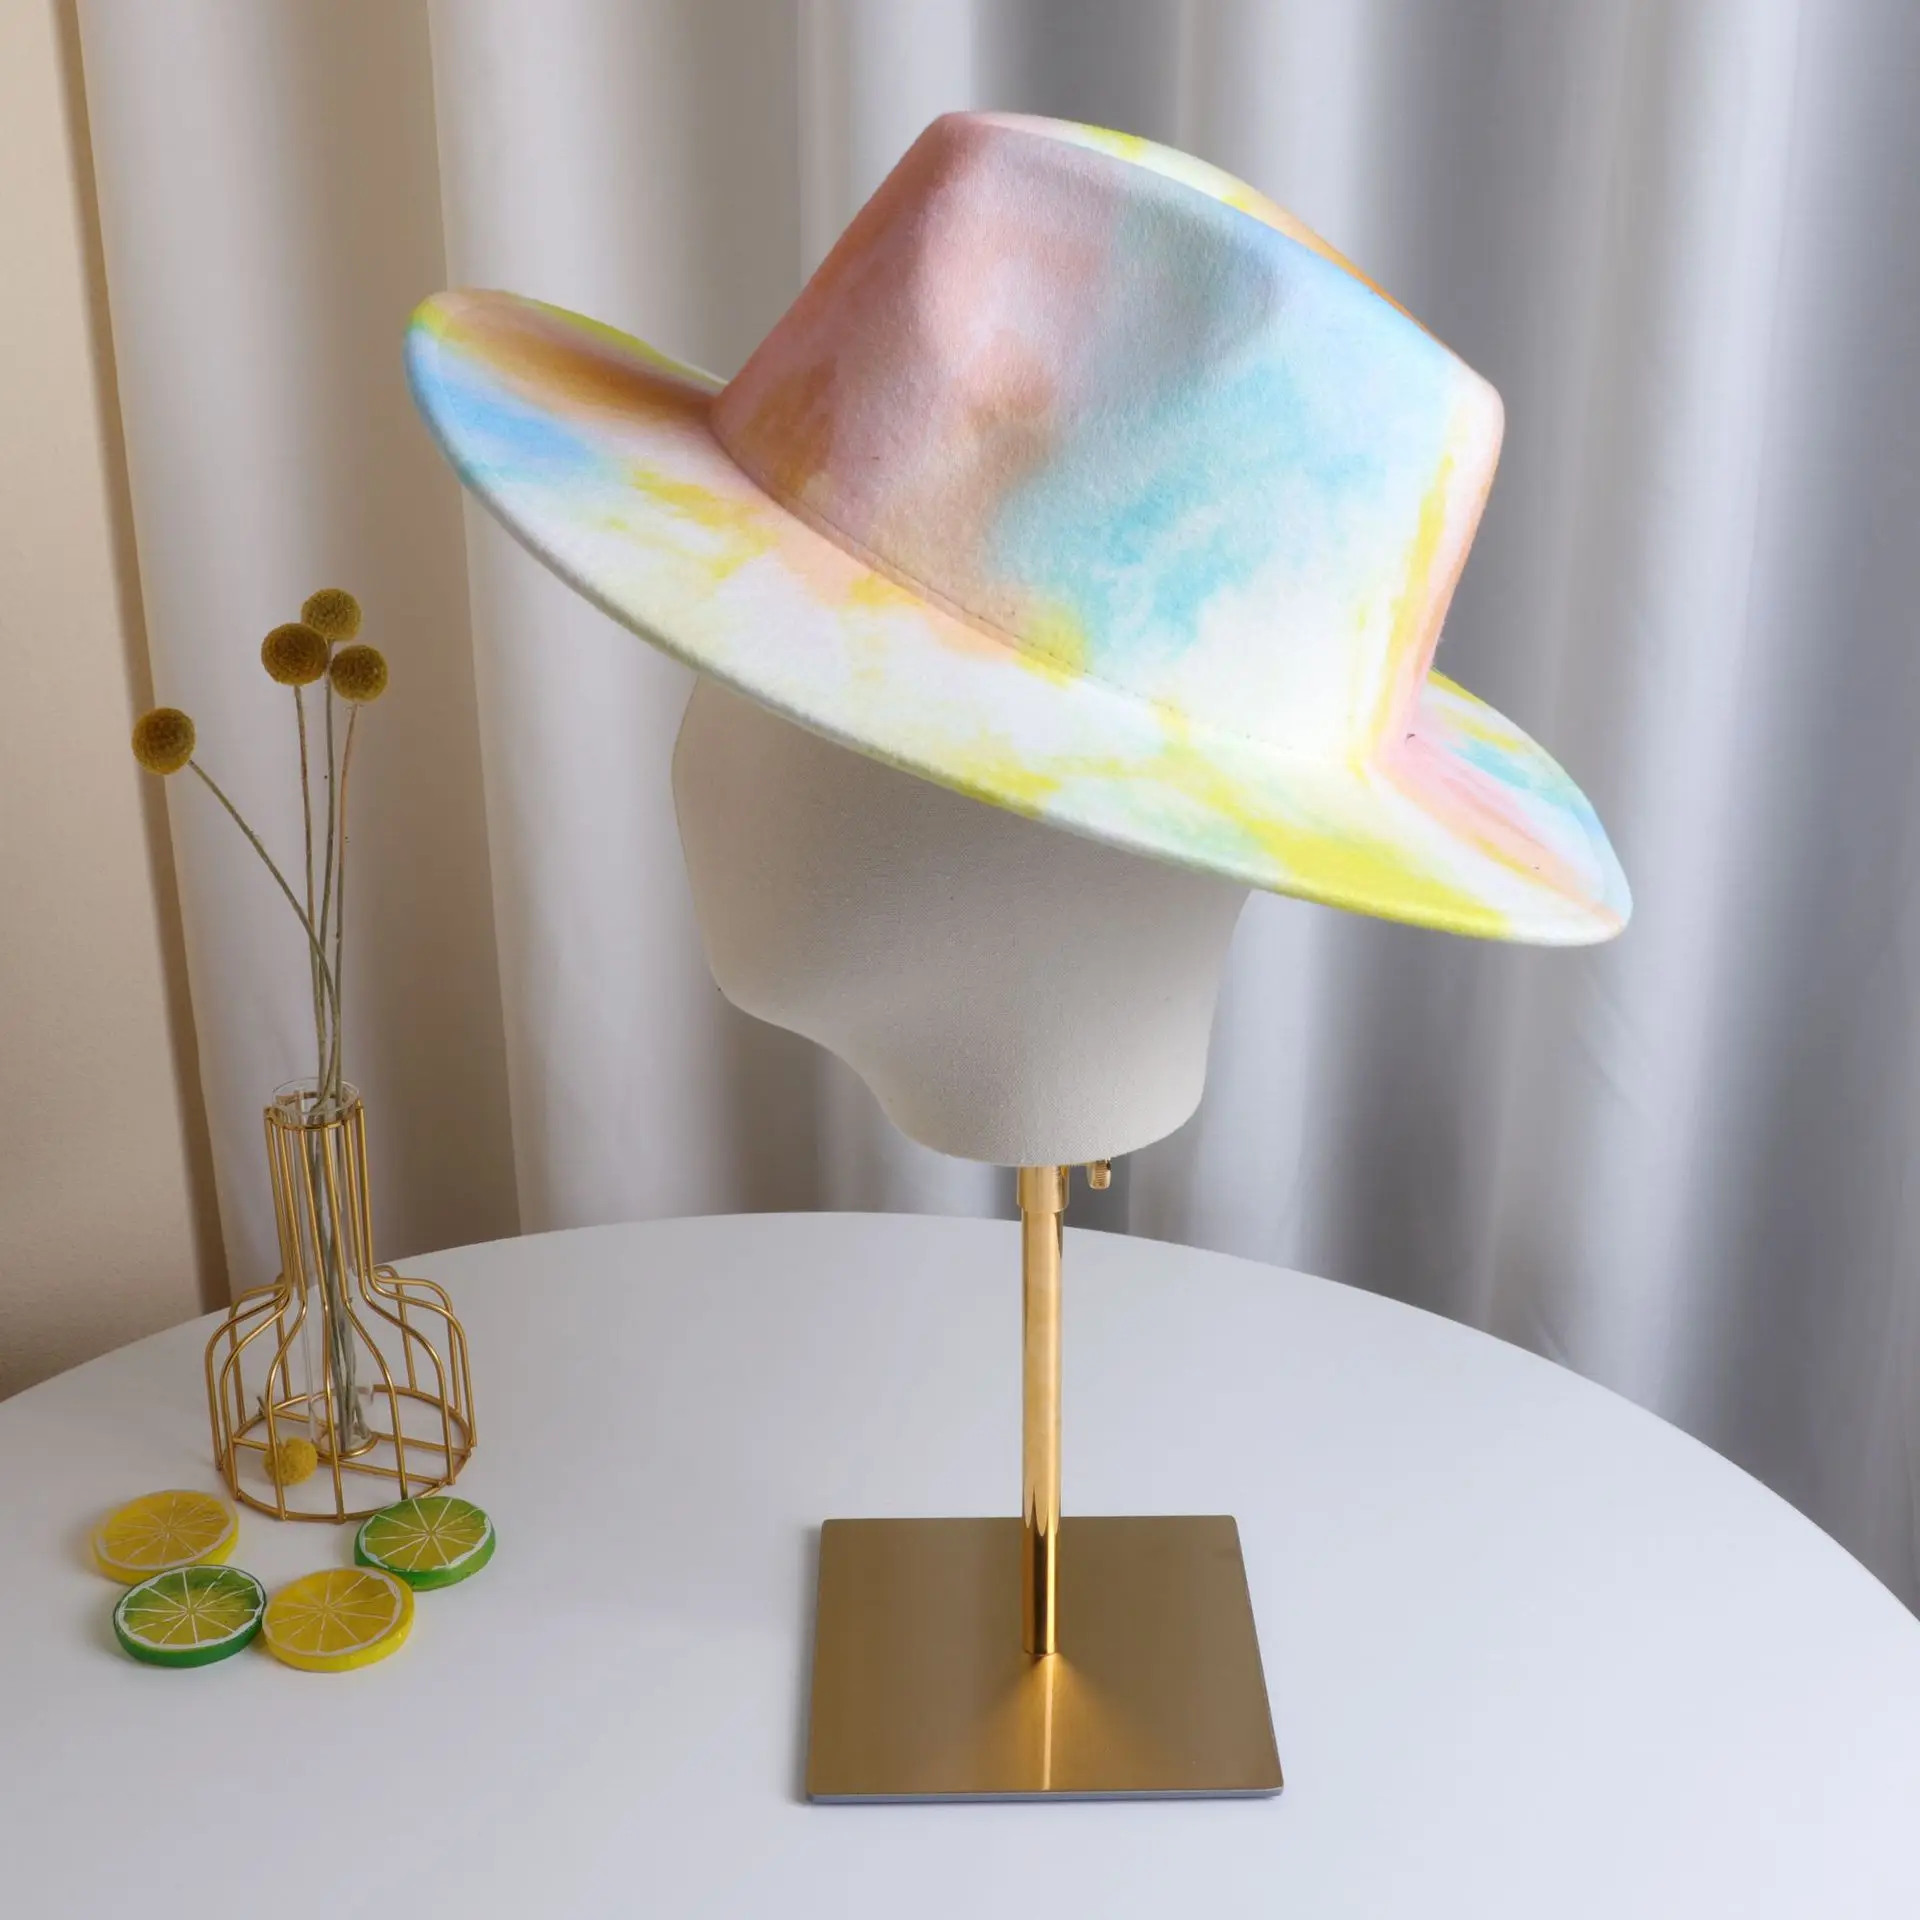 Шляпа Федора Женская фетровая Панама с цепью в виде пончика джазовая шляпа